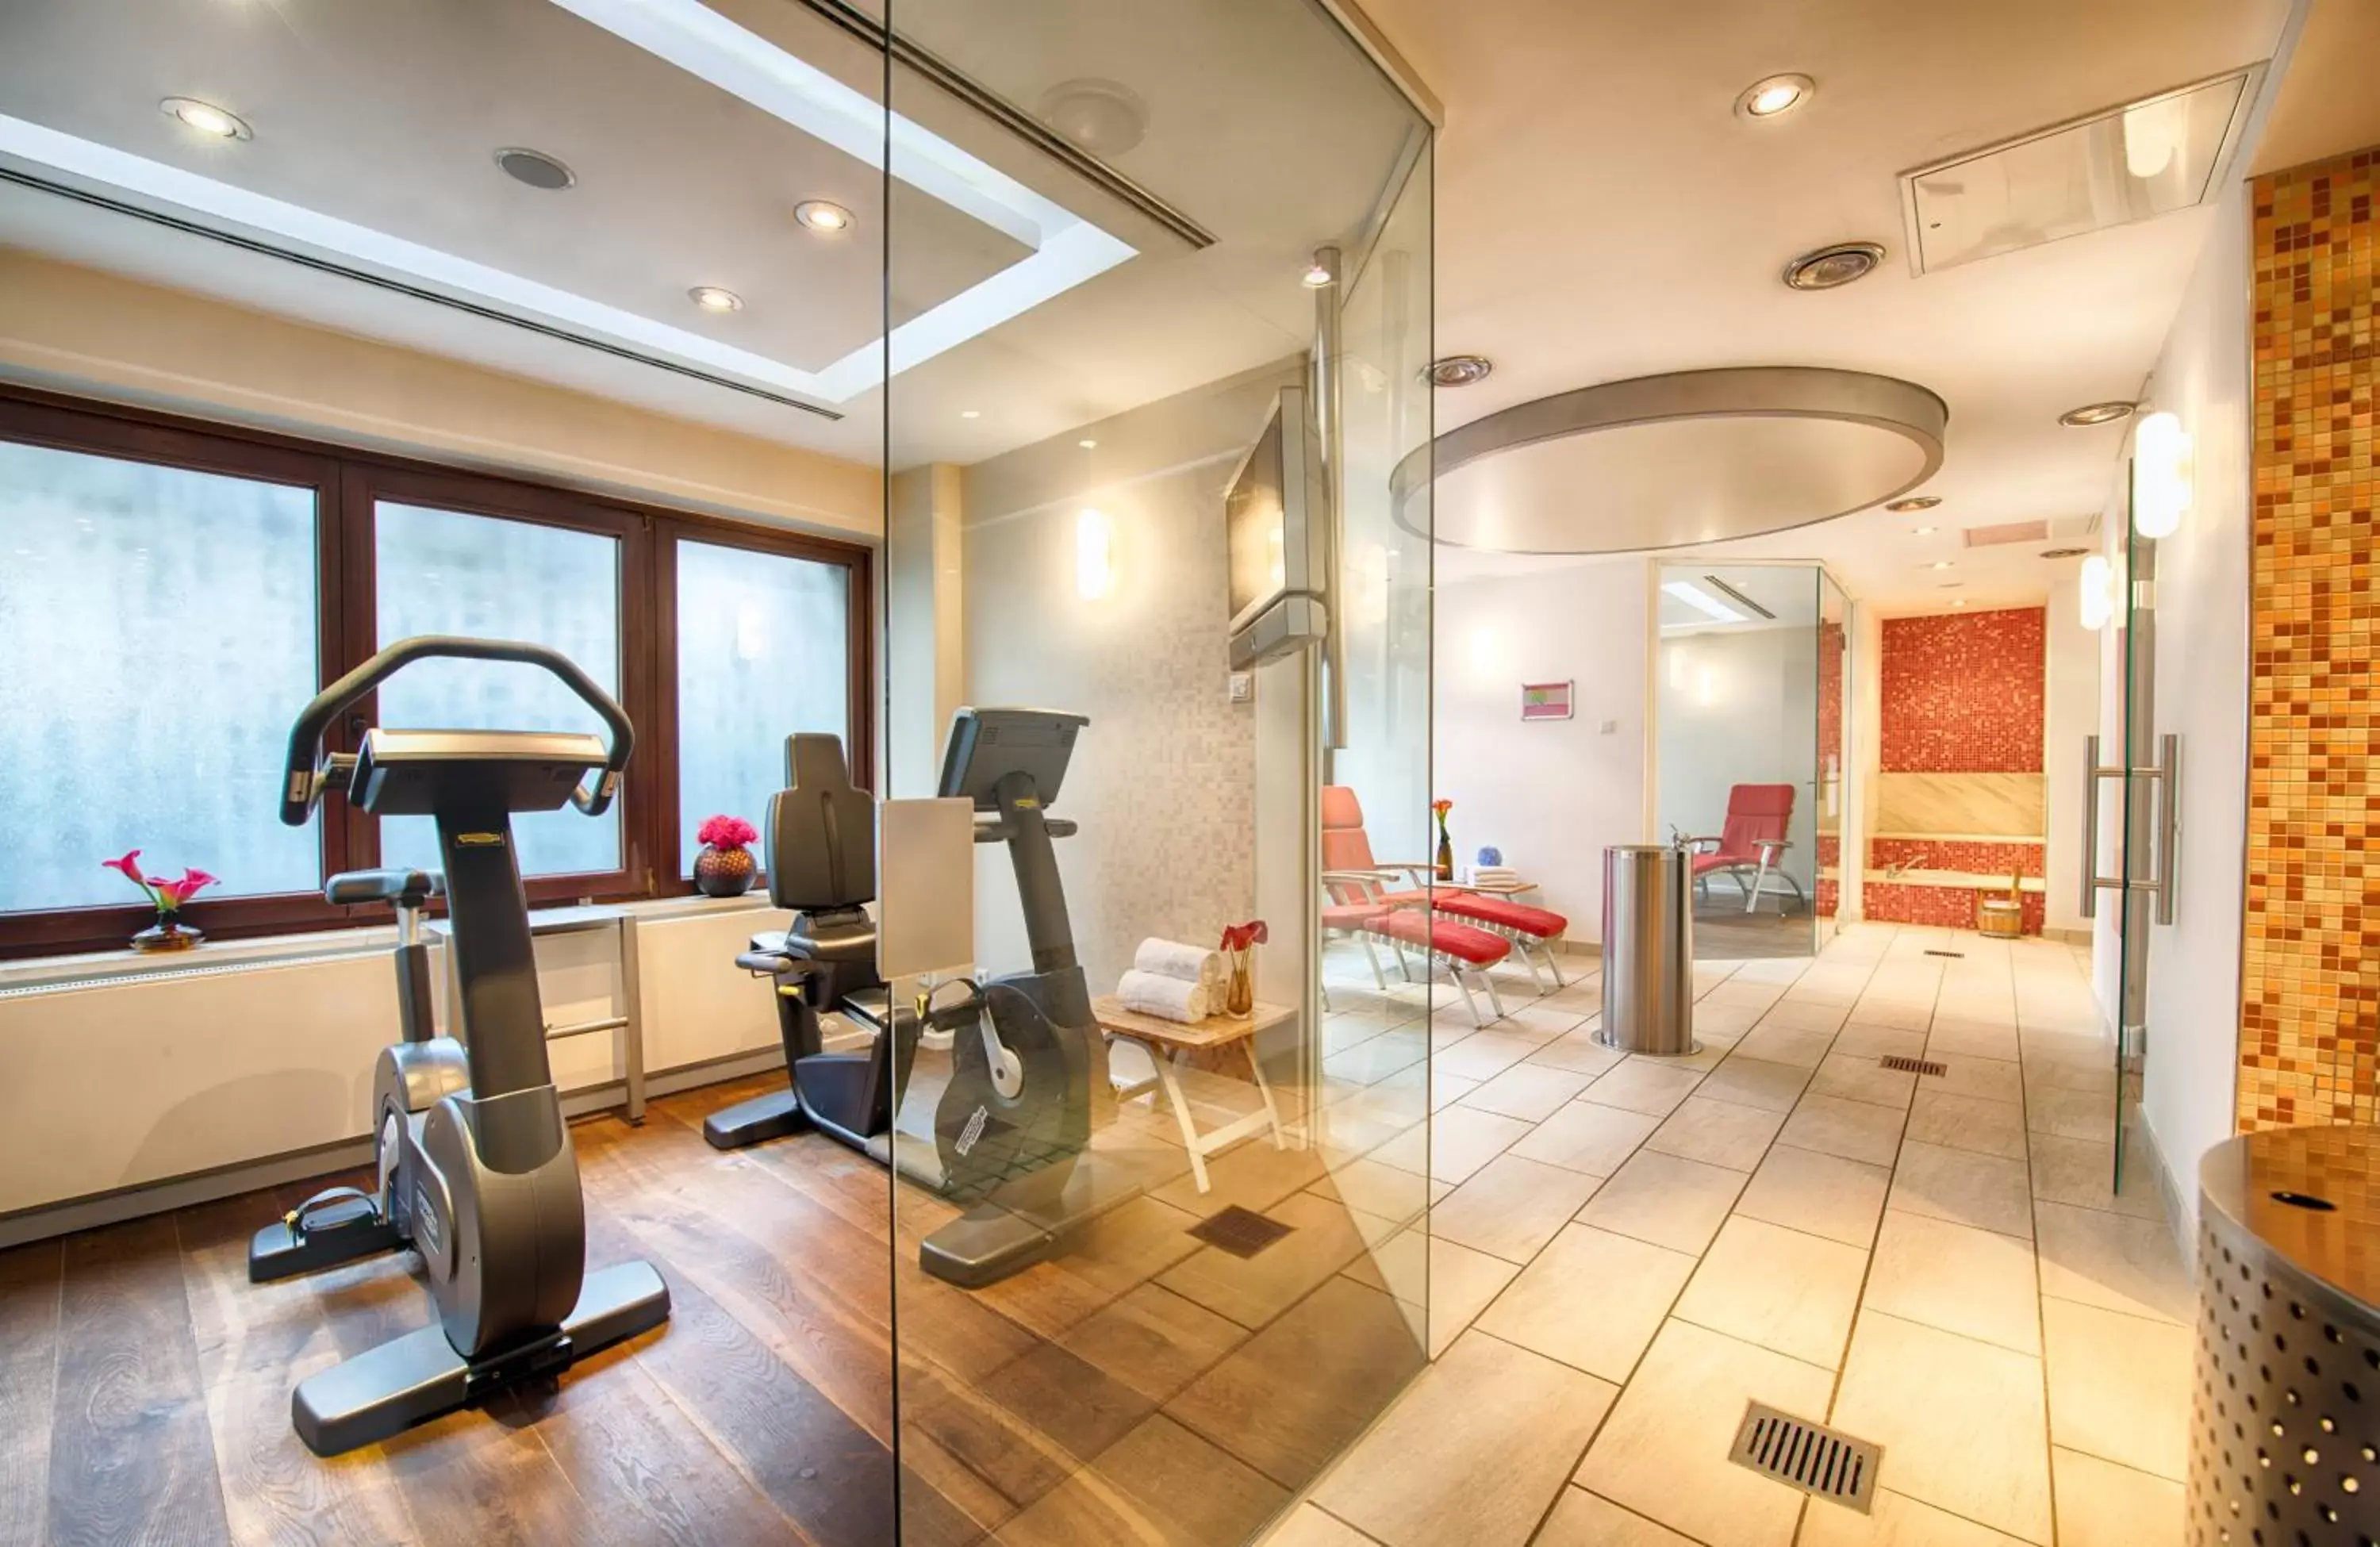 Fitness centre/facilities, Fitness Center/Facilities in Leonardo Hotel & Residenz München